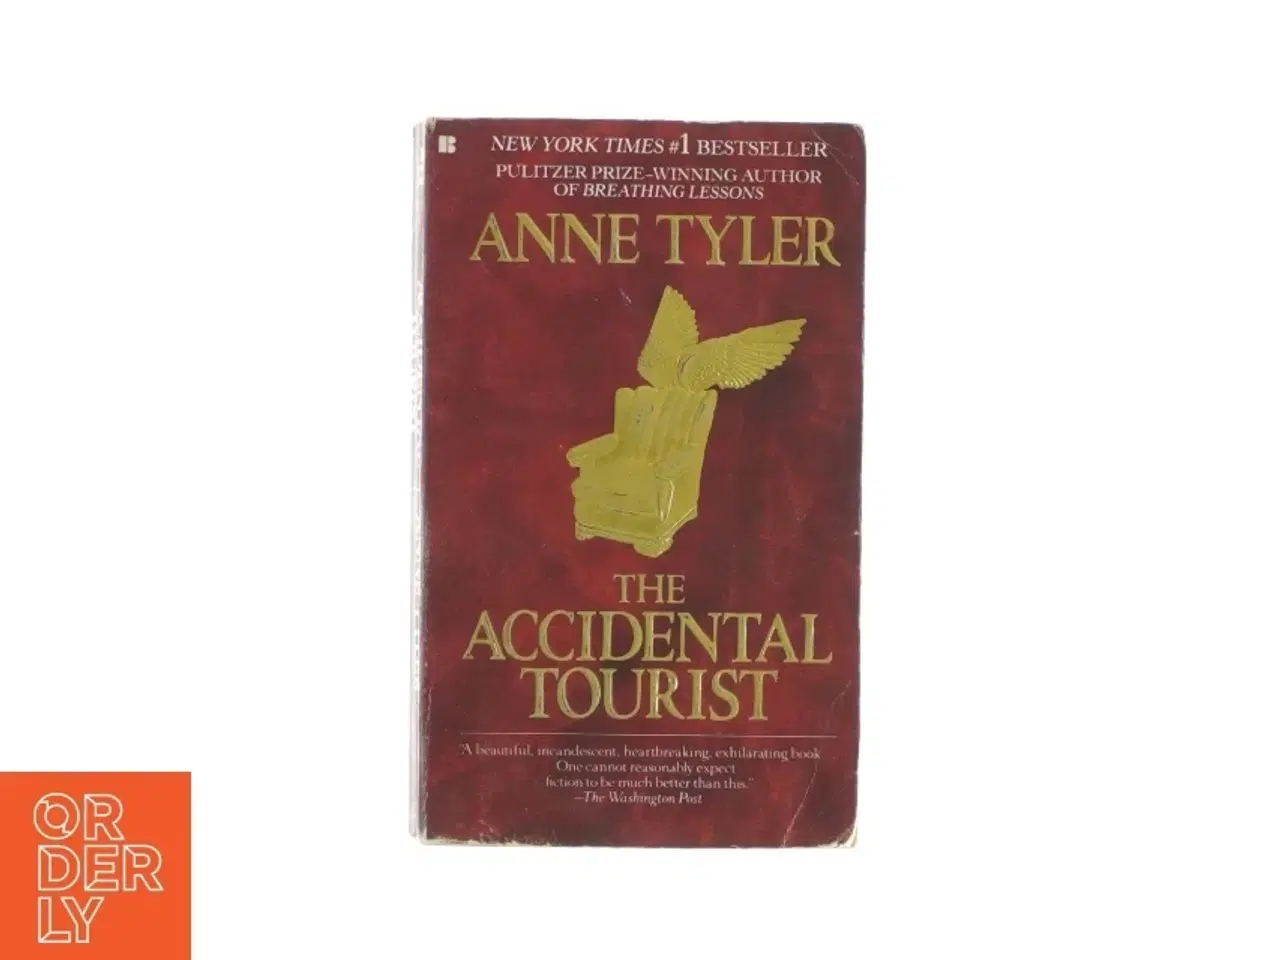 Billede 1 - The accidental tourist af Anne Tyler (bog)